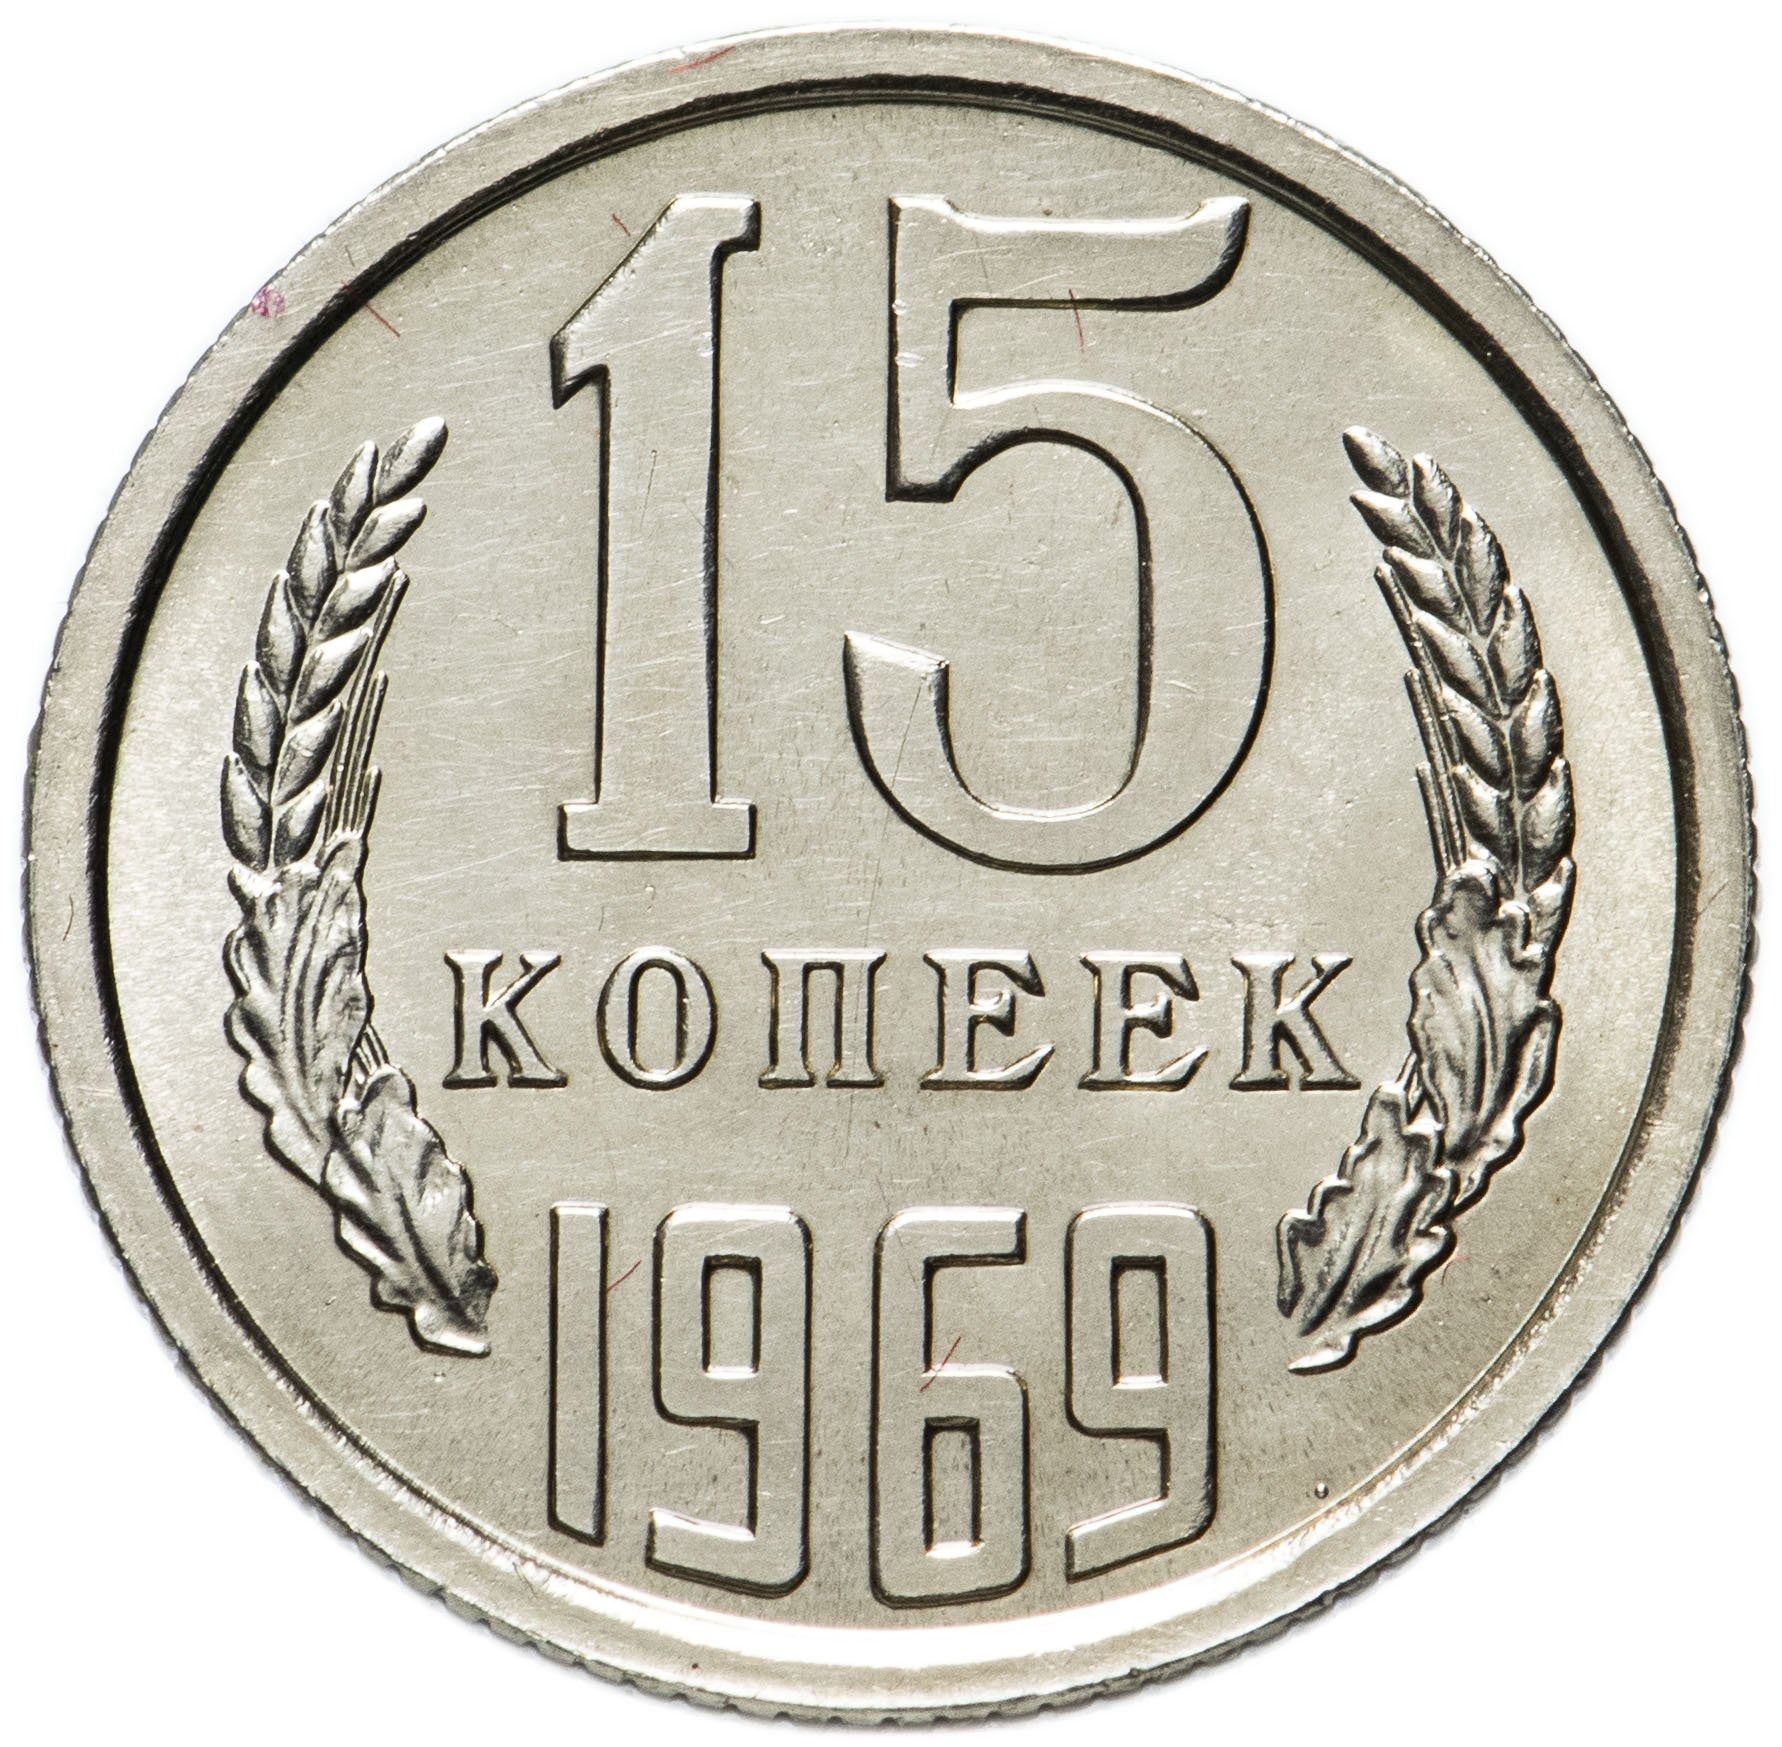 Почему 15 рублей